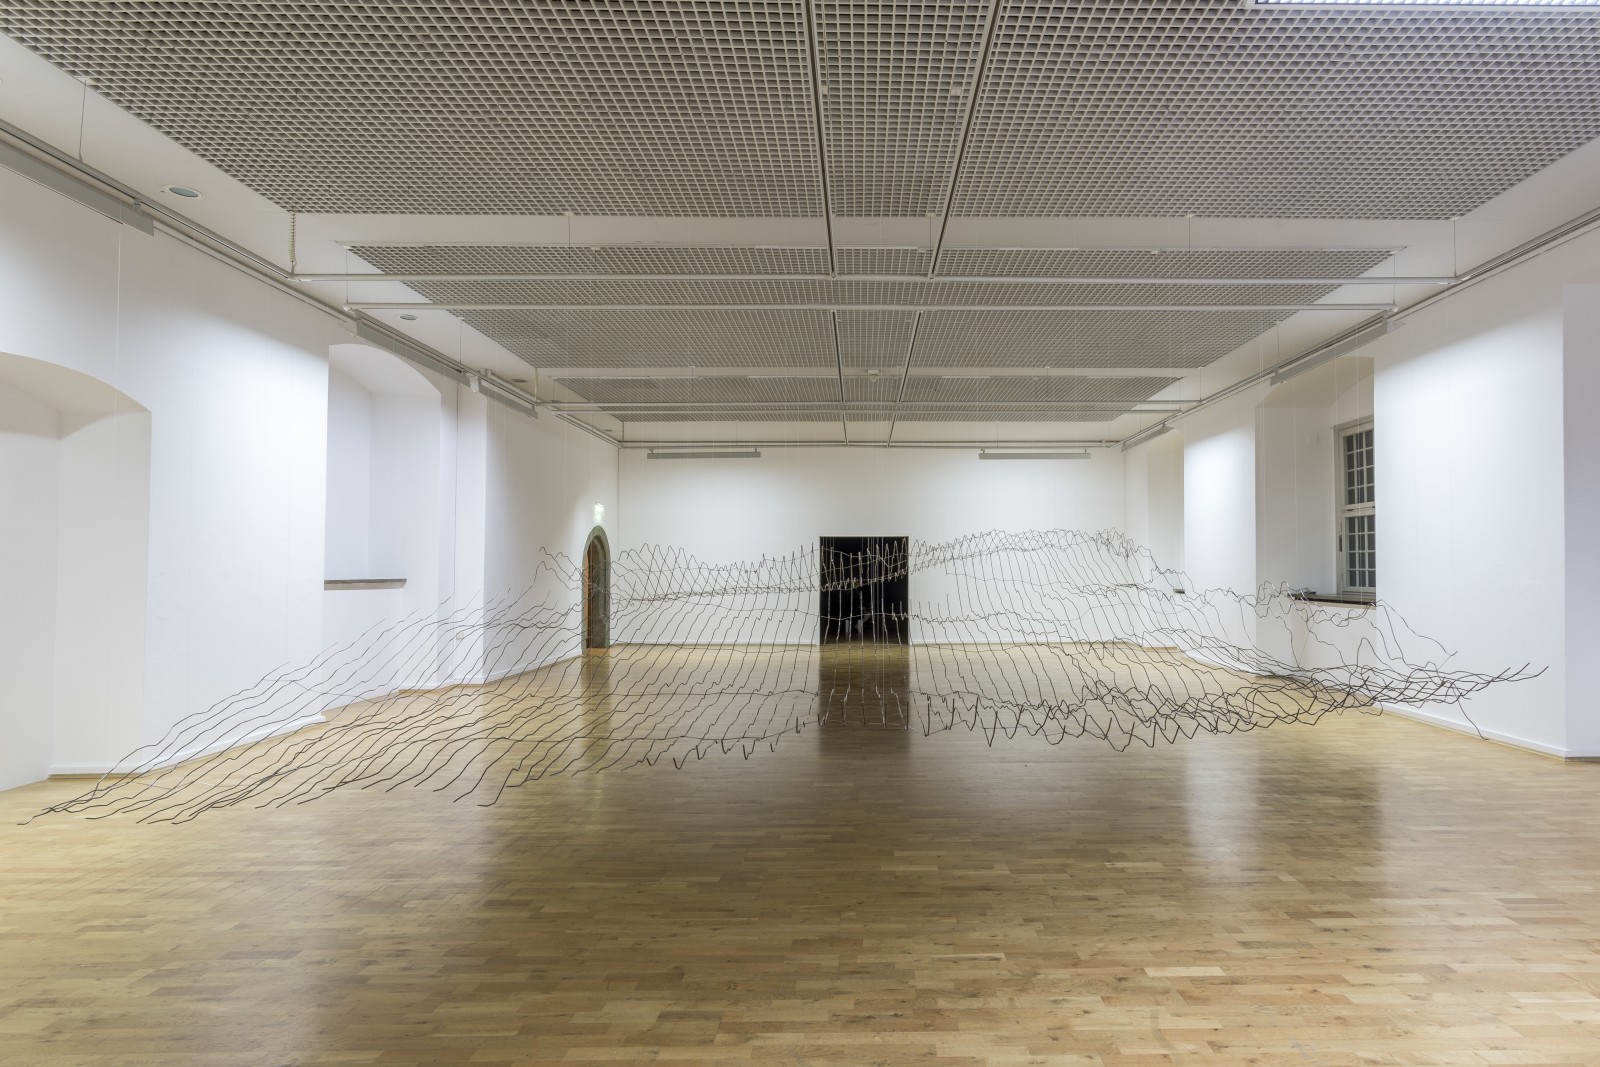 <div class="image_caption_container"><div class="image_caption"><p>Exhibition view: Julius von Bismarck, <strong>Gewaltenteilung</strong>, Städtische Galerie Wolfsburg (2017).</p><p>Photo © Frank Sperling</p></div></div>